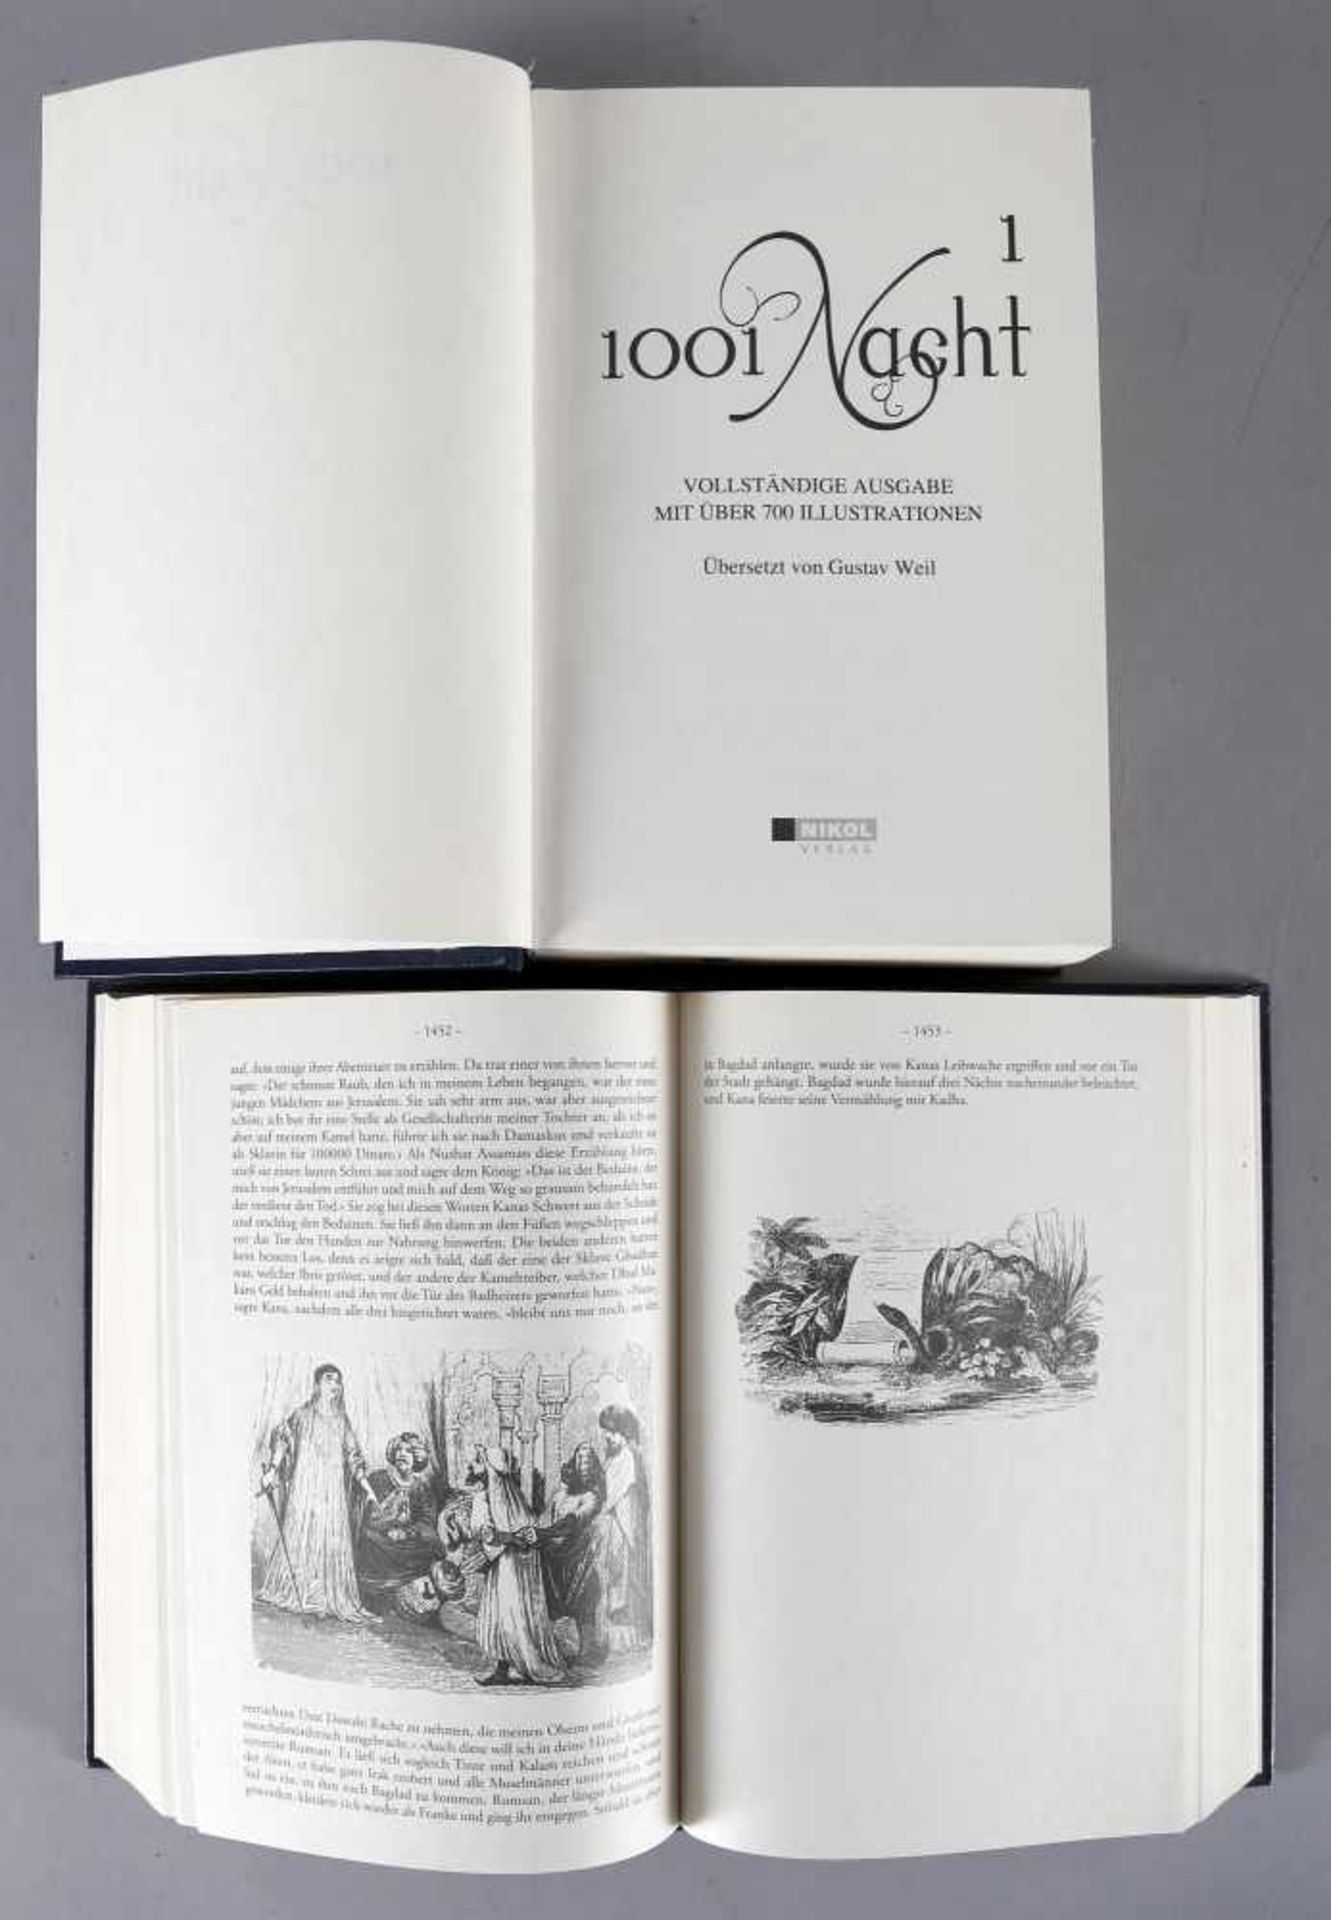 Tausend und eine Nacht, 2 Bände, vollständige Ausgabe mit über 700 Illustrationen, übersetzt von